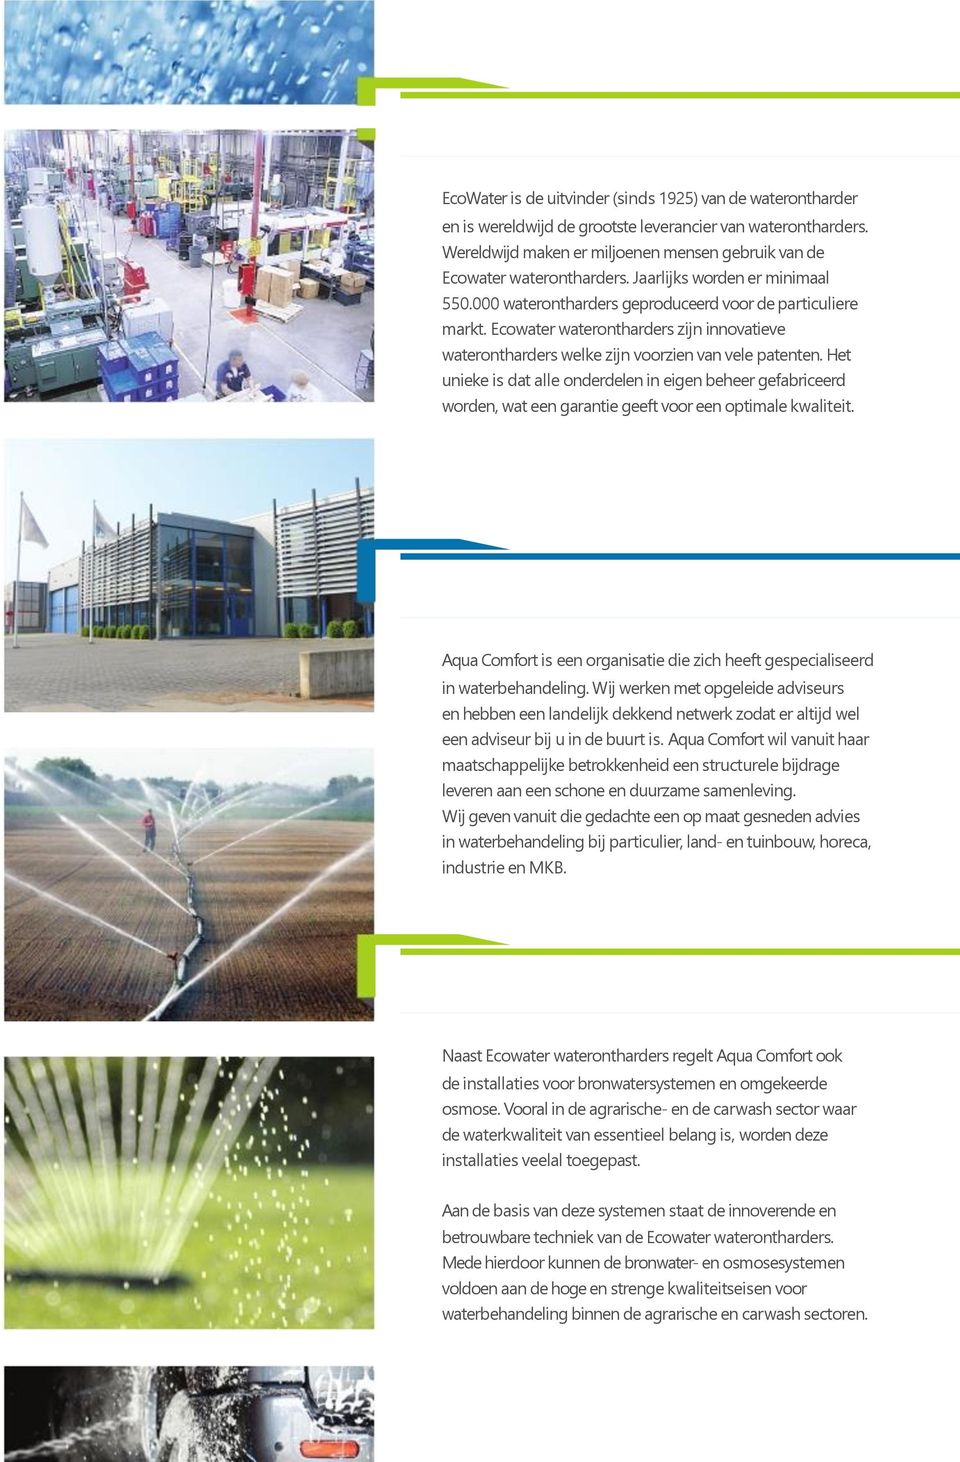 Ecowater waterontharders zijn innovatieve waterontharders welke zijn voorzien van vele patenten.